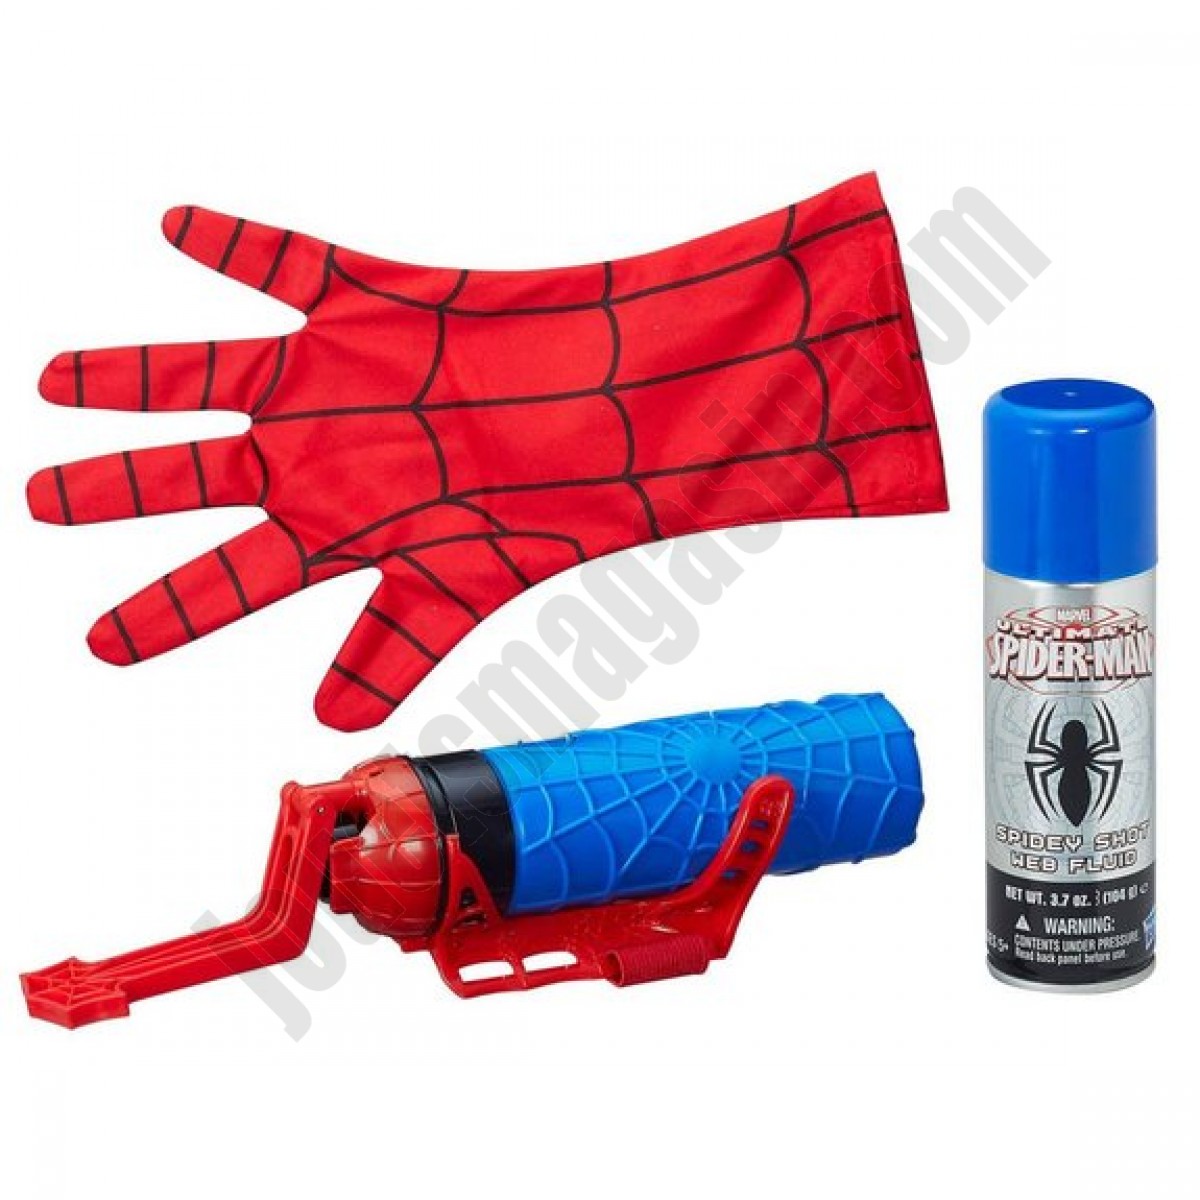 Super gant lanceur de toile Spider-Man - déstockage - Super gant lanceur de toile Spider-Man - déstockage